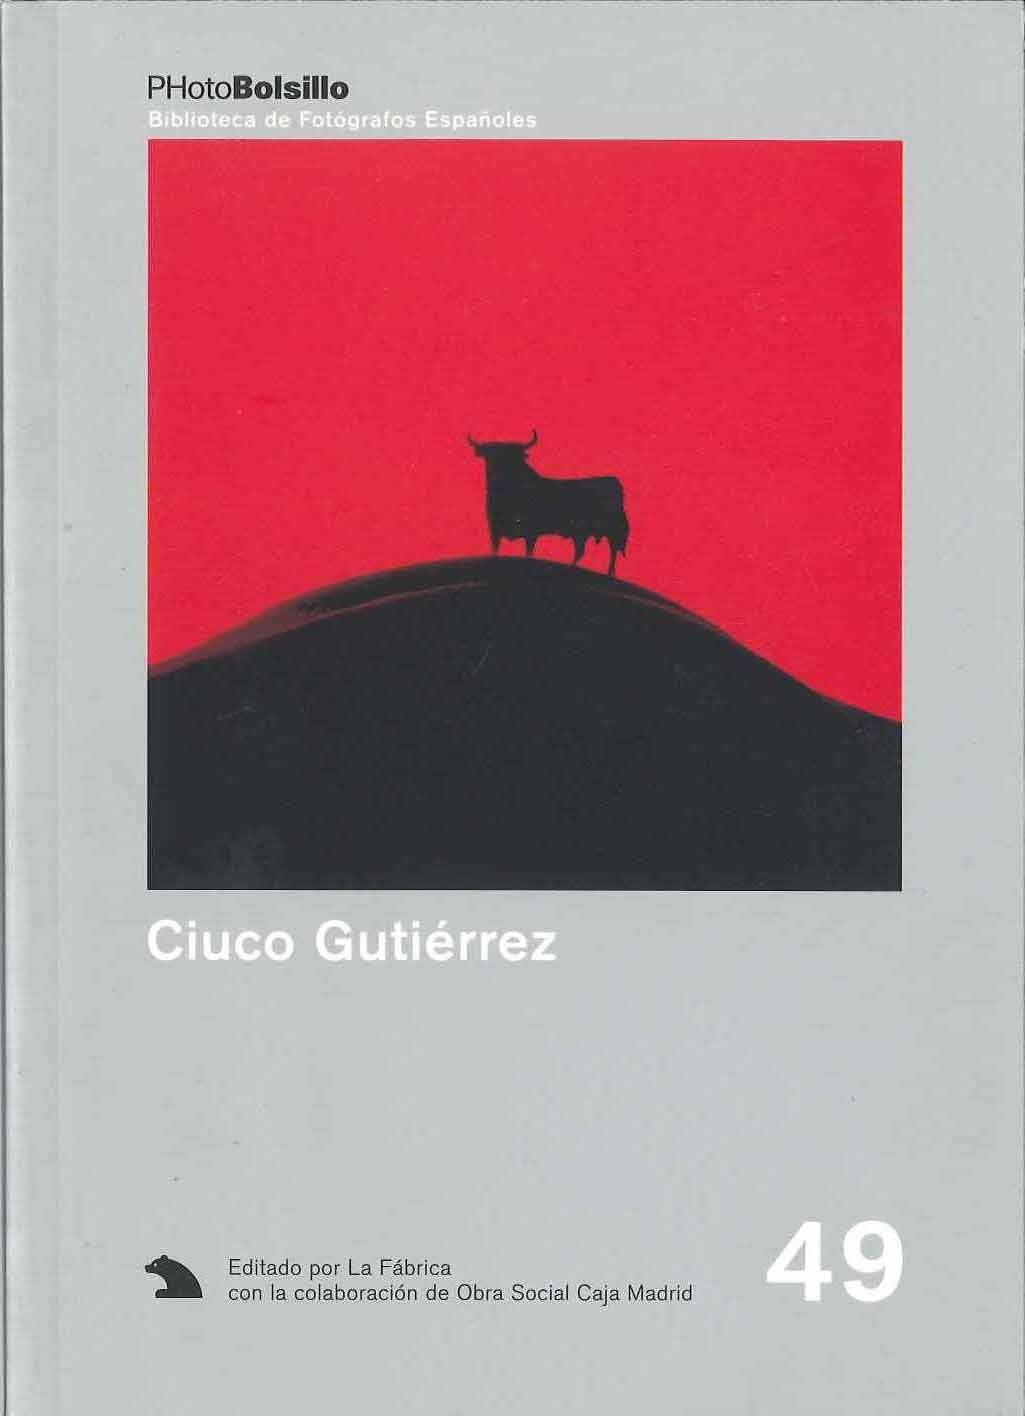 Ciuco Gutiérrez